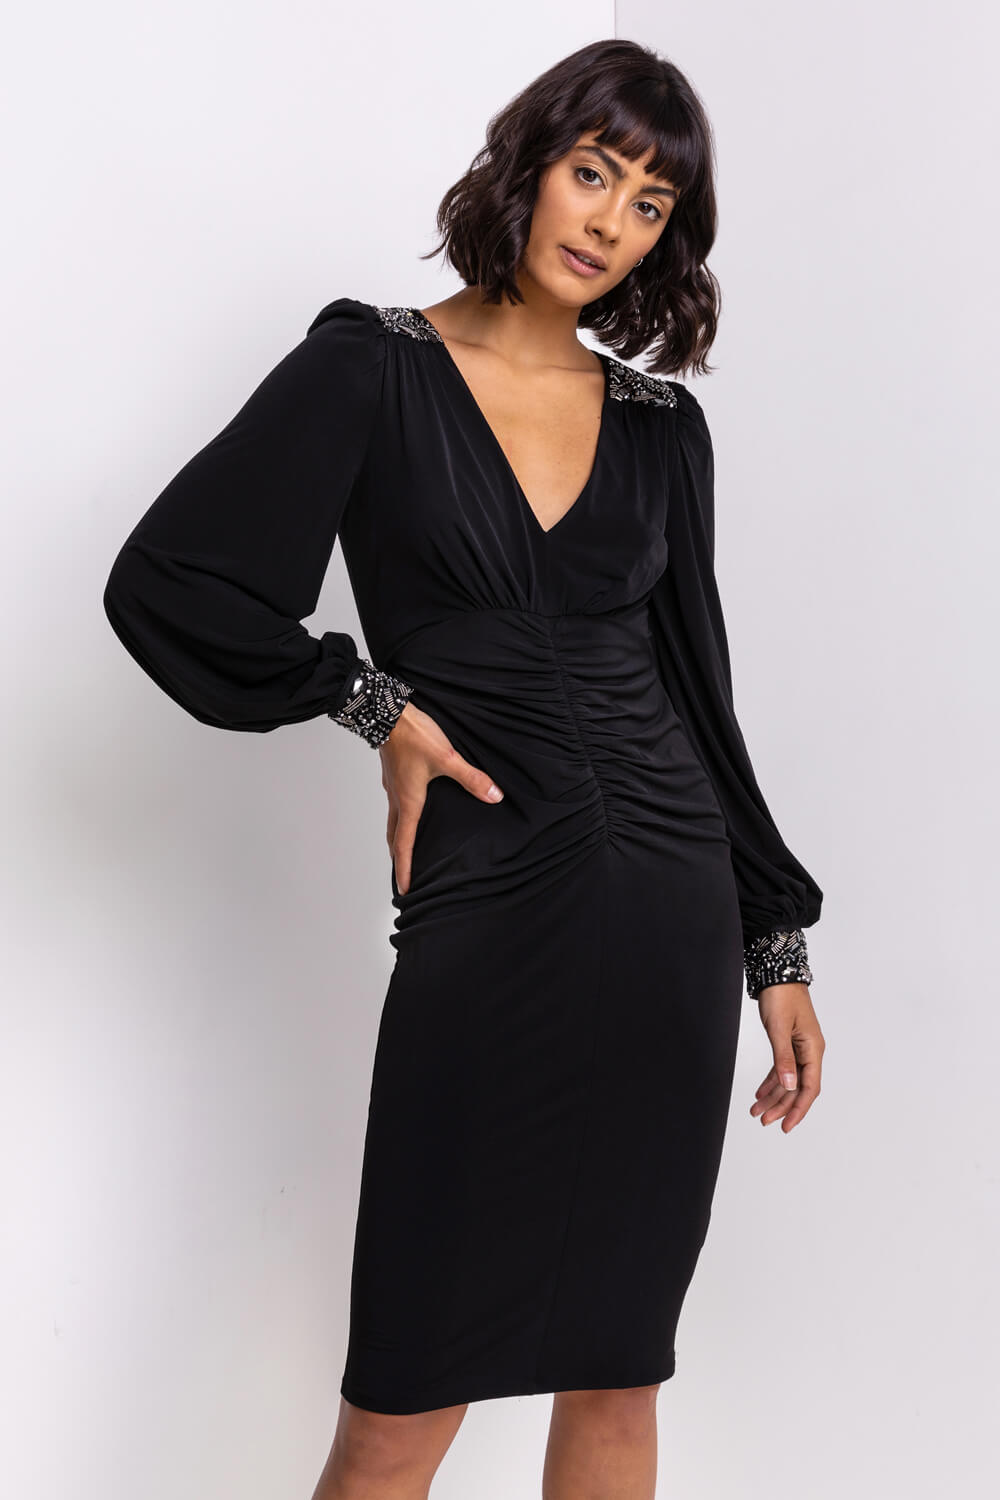 Black Sparkle Embellished Ruched Dress, Image 5 of 6